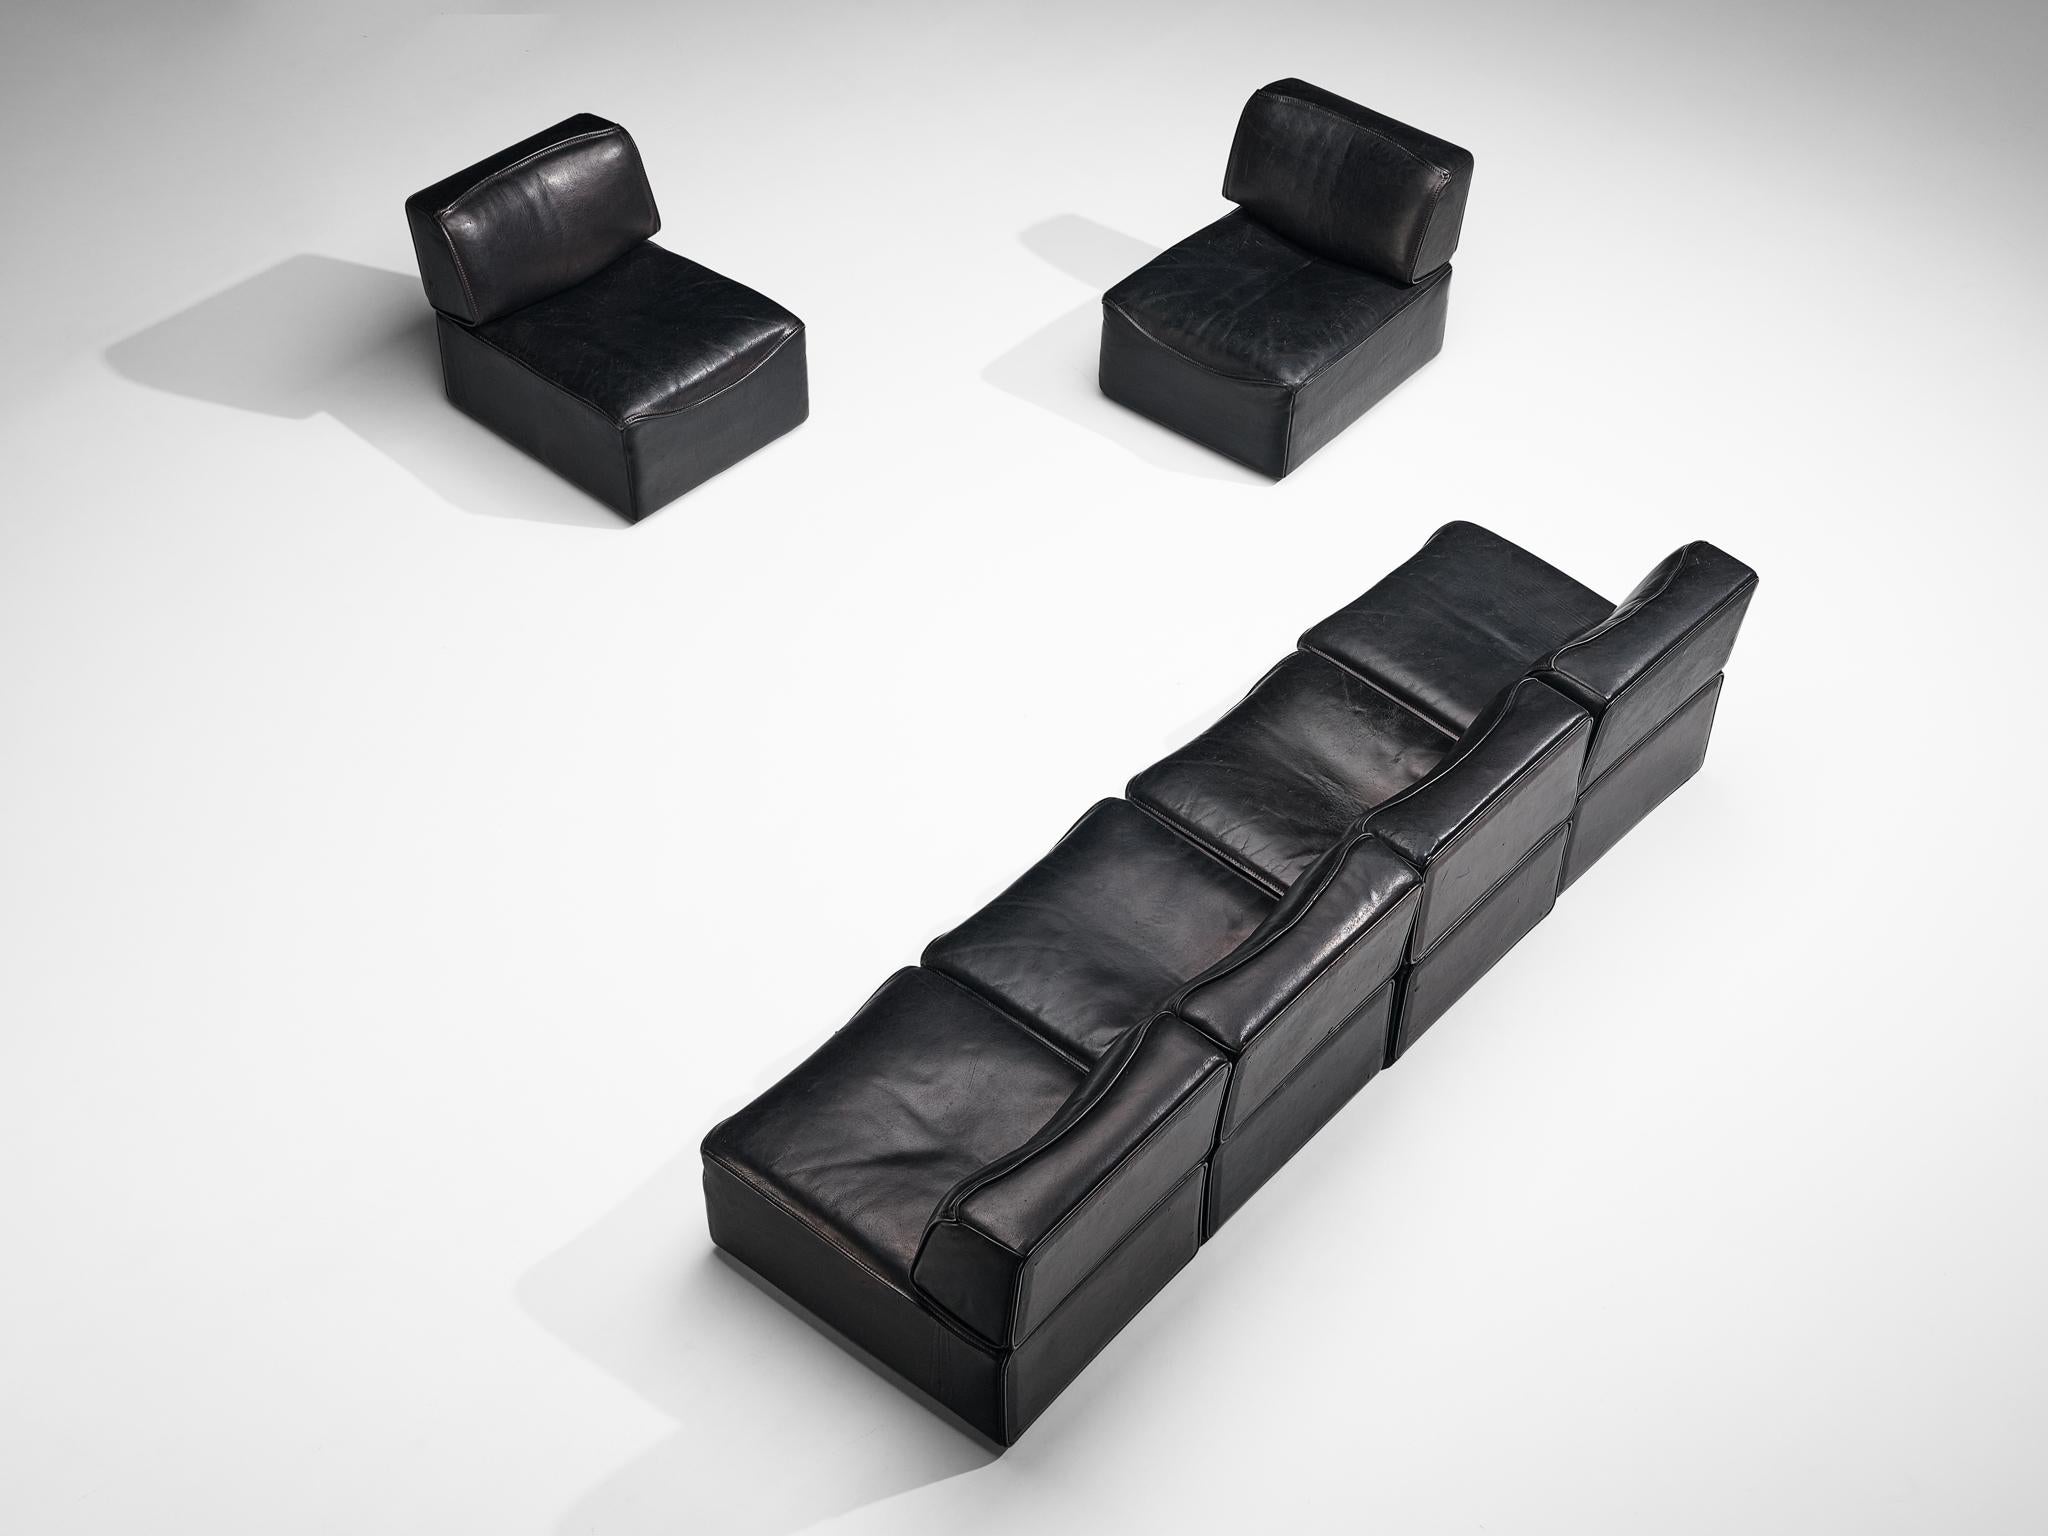 De Sede, canapé sectionnel modèle 'DS-15', cuir, Suisse, années 1970.

Ce canapé sectionnel de grande qualité conçu par Design/One dans les années 1970 contient à la fois un élément d'angle et six éléments réguliers, ce qui permet d'agencer ce